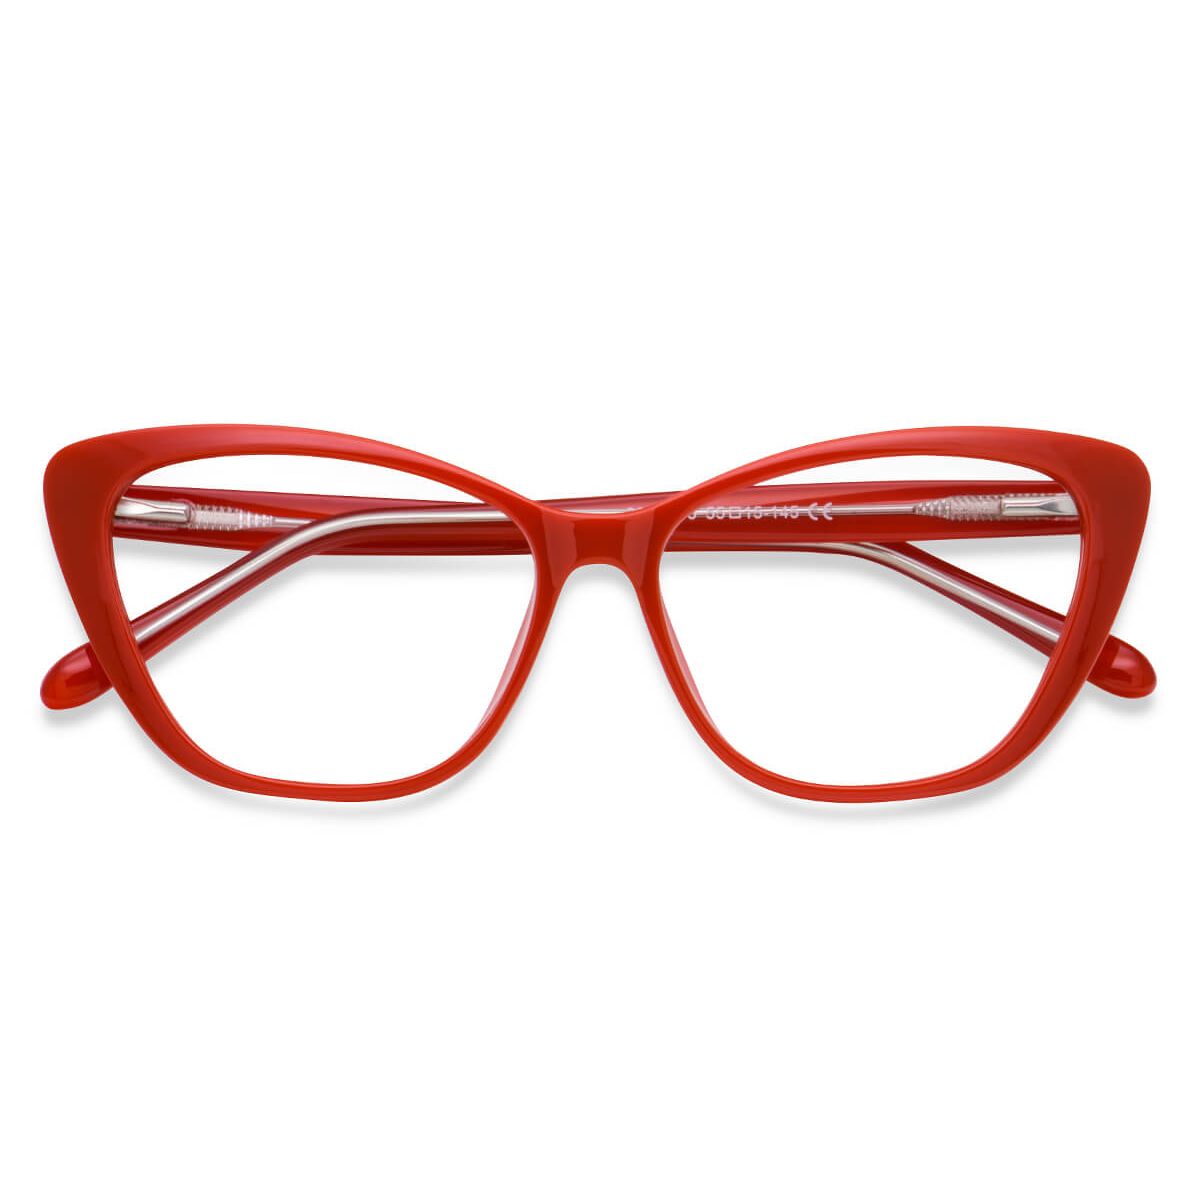 W2004 Oval Red Eyeglasses Frames | Leoptique